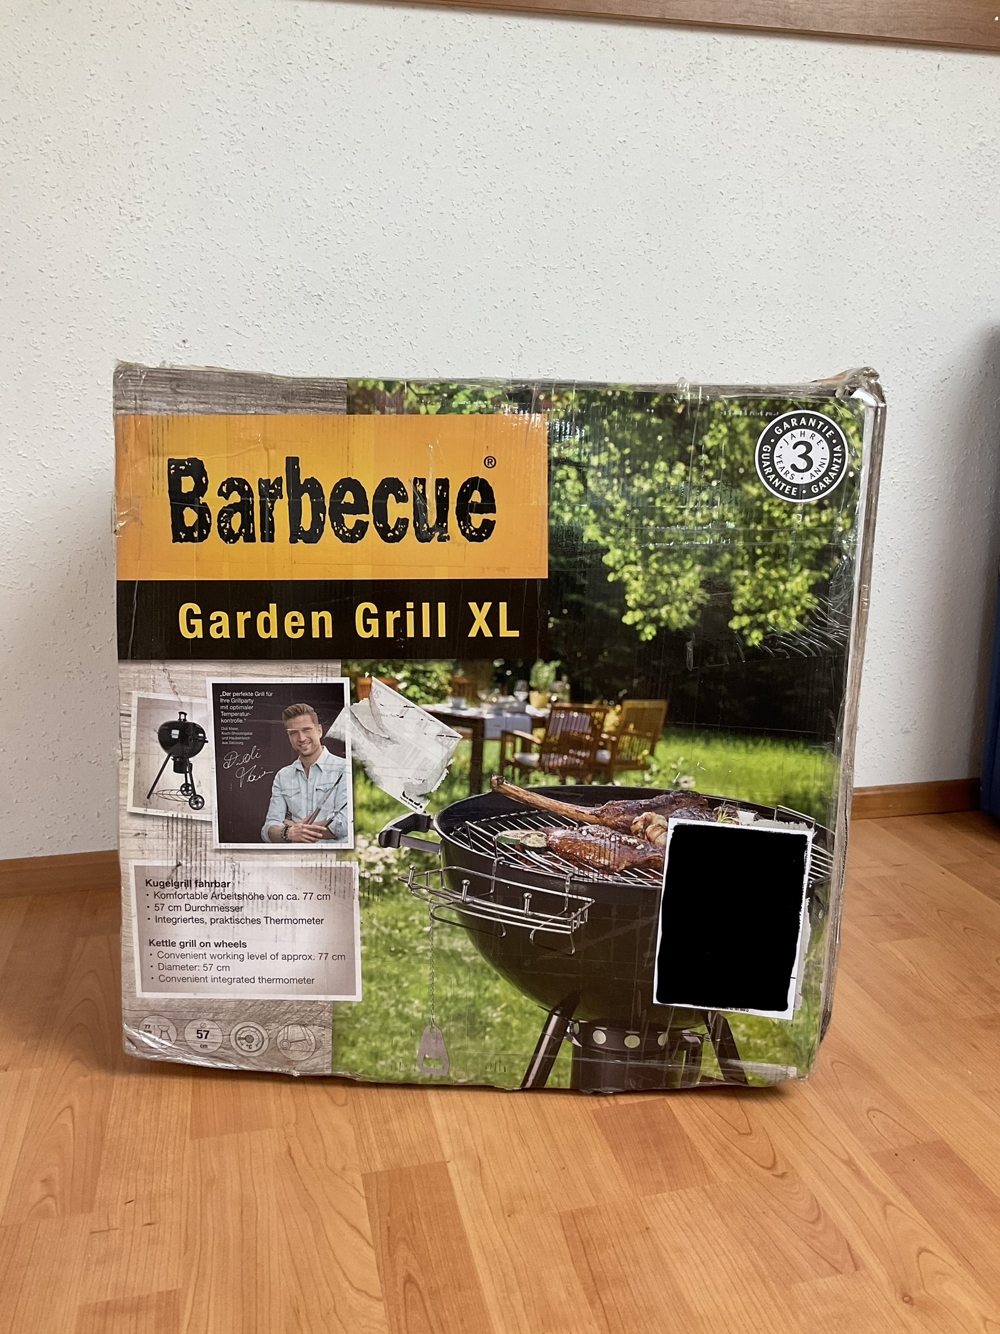 Barbecue Garden Grill XL